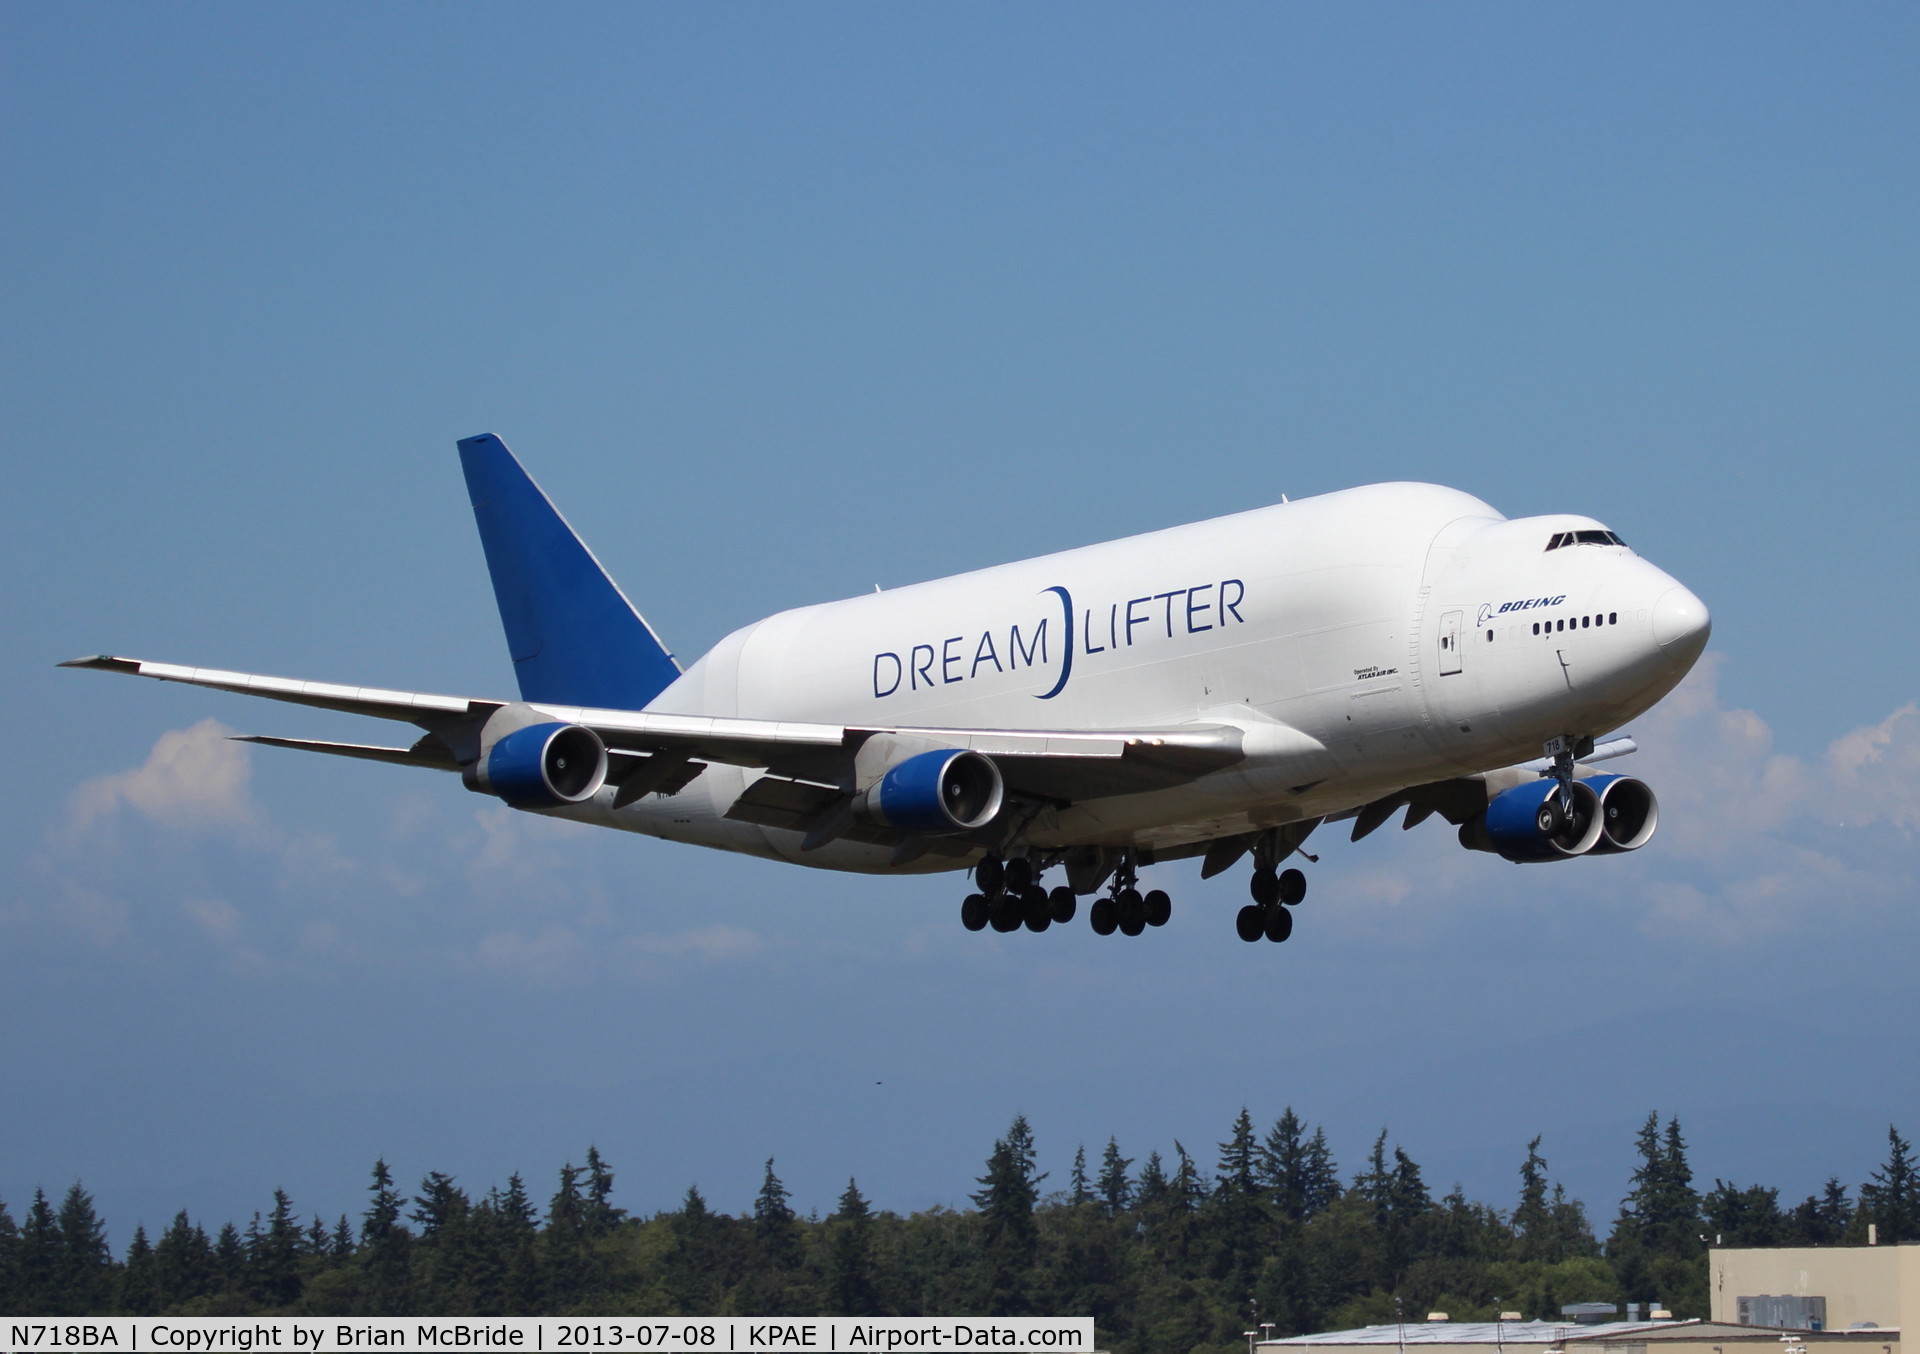 N718BA, 1992 Boeing 747-4H6 C/N 27042, 747-4J6LCF Dreamlifter. Boeing (Atlas Air). N718BA cn 27042 932. Everett - Snohomish County Paine Field (PAE KPAE). Image © Brian McBride. 08 July 2013